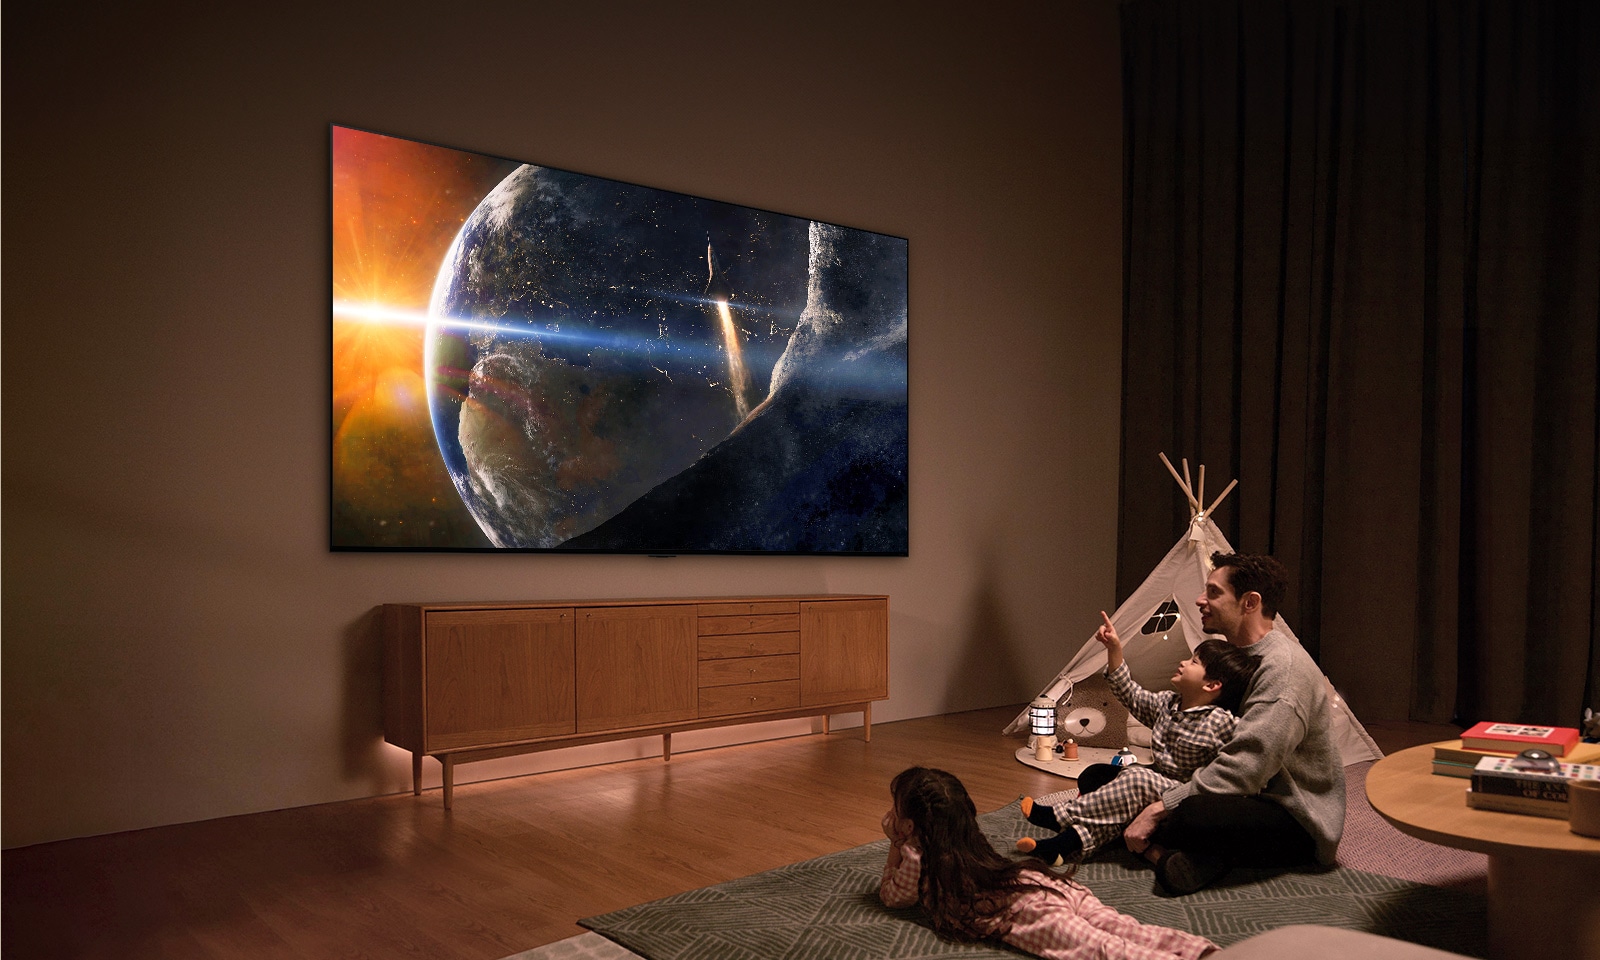 ครอบครัวหนึ่งนั่งอยู่บนพื้นห้องนั่งเล่นที่มีไฟสลัวๆ ข้างโต๊ะตัวเล็ก มองขึ้นไปที่ทีวี LG ติดผนังซึ่งแสดงภาพโลกจากอวกาศ